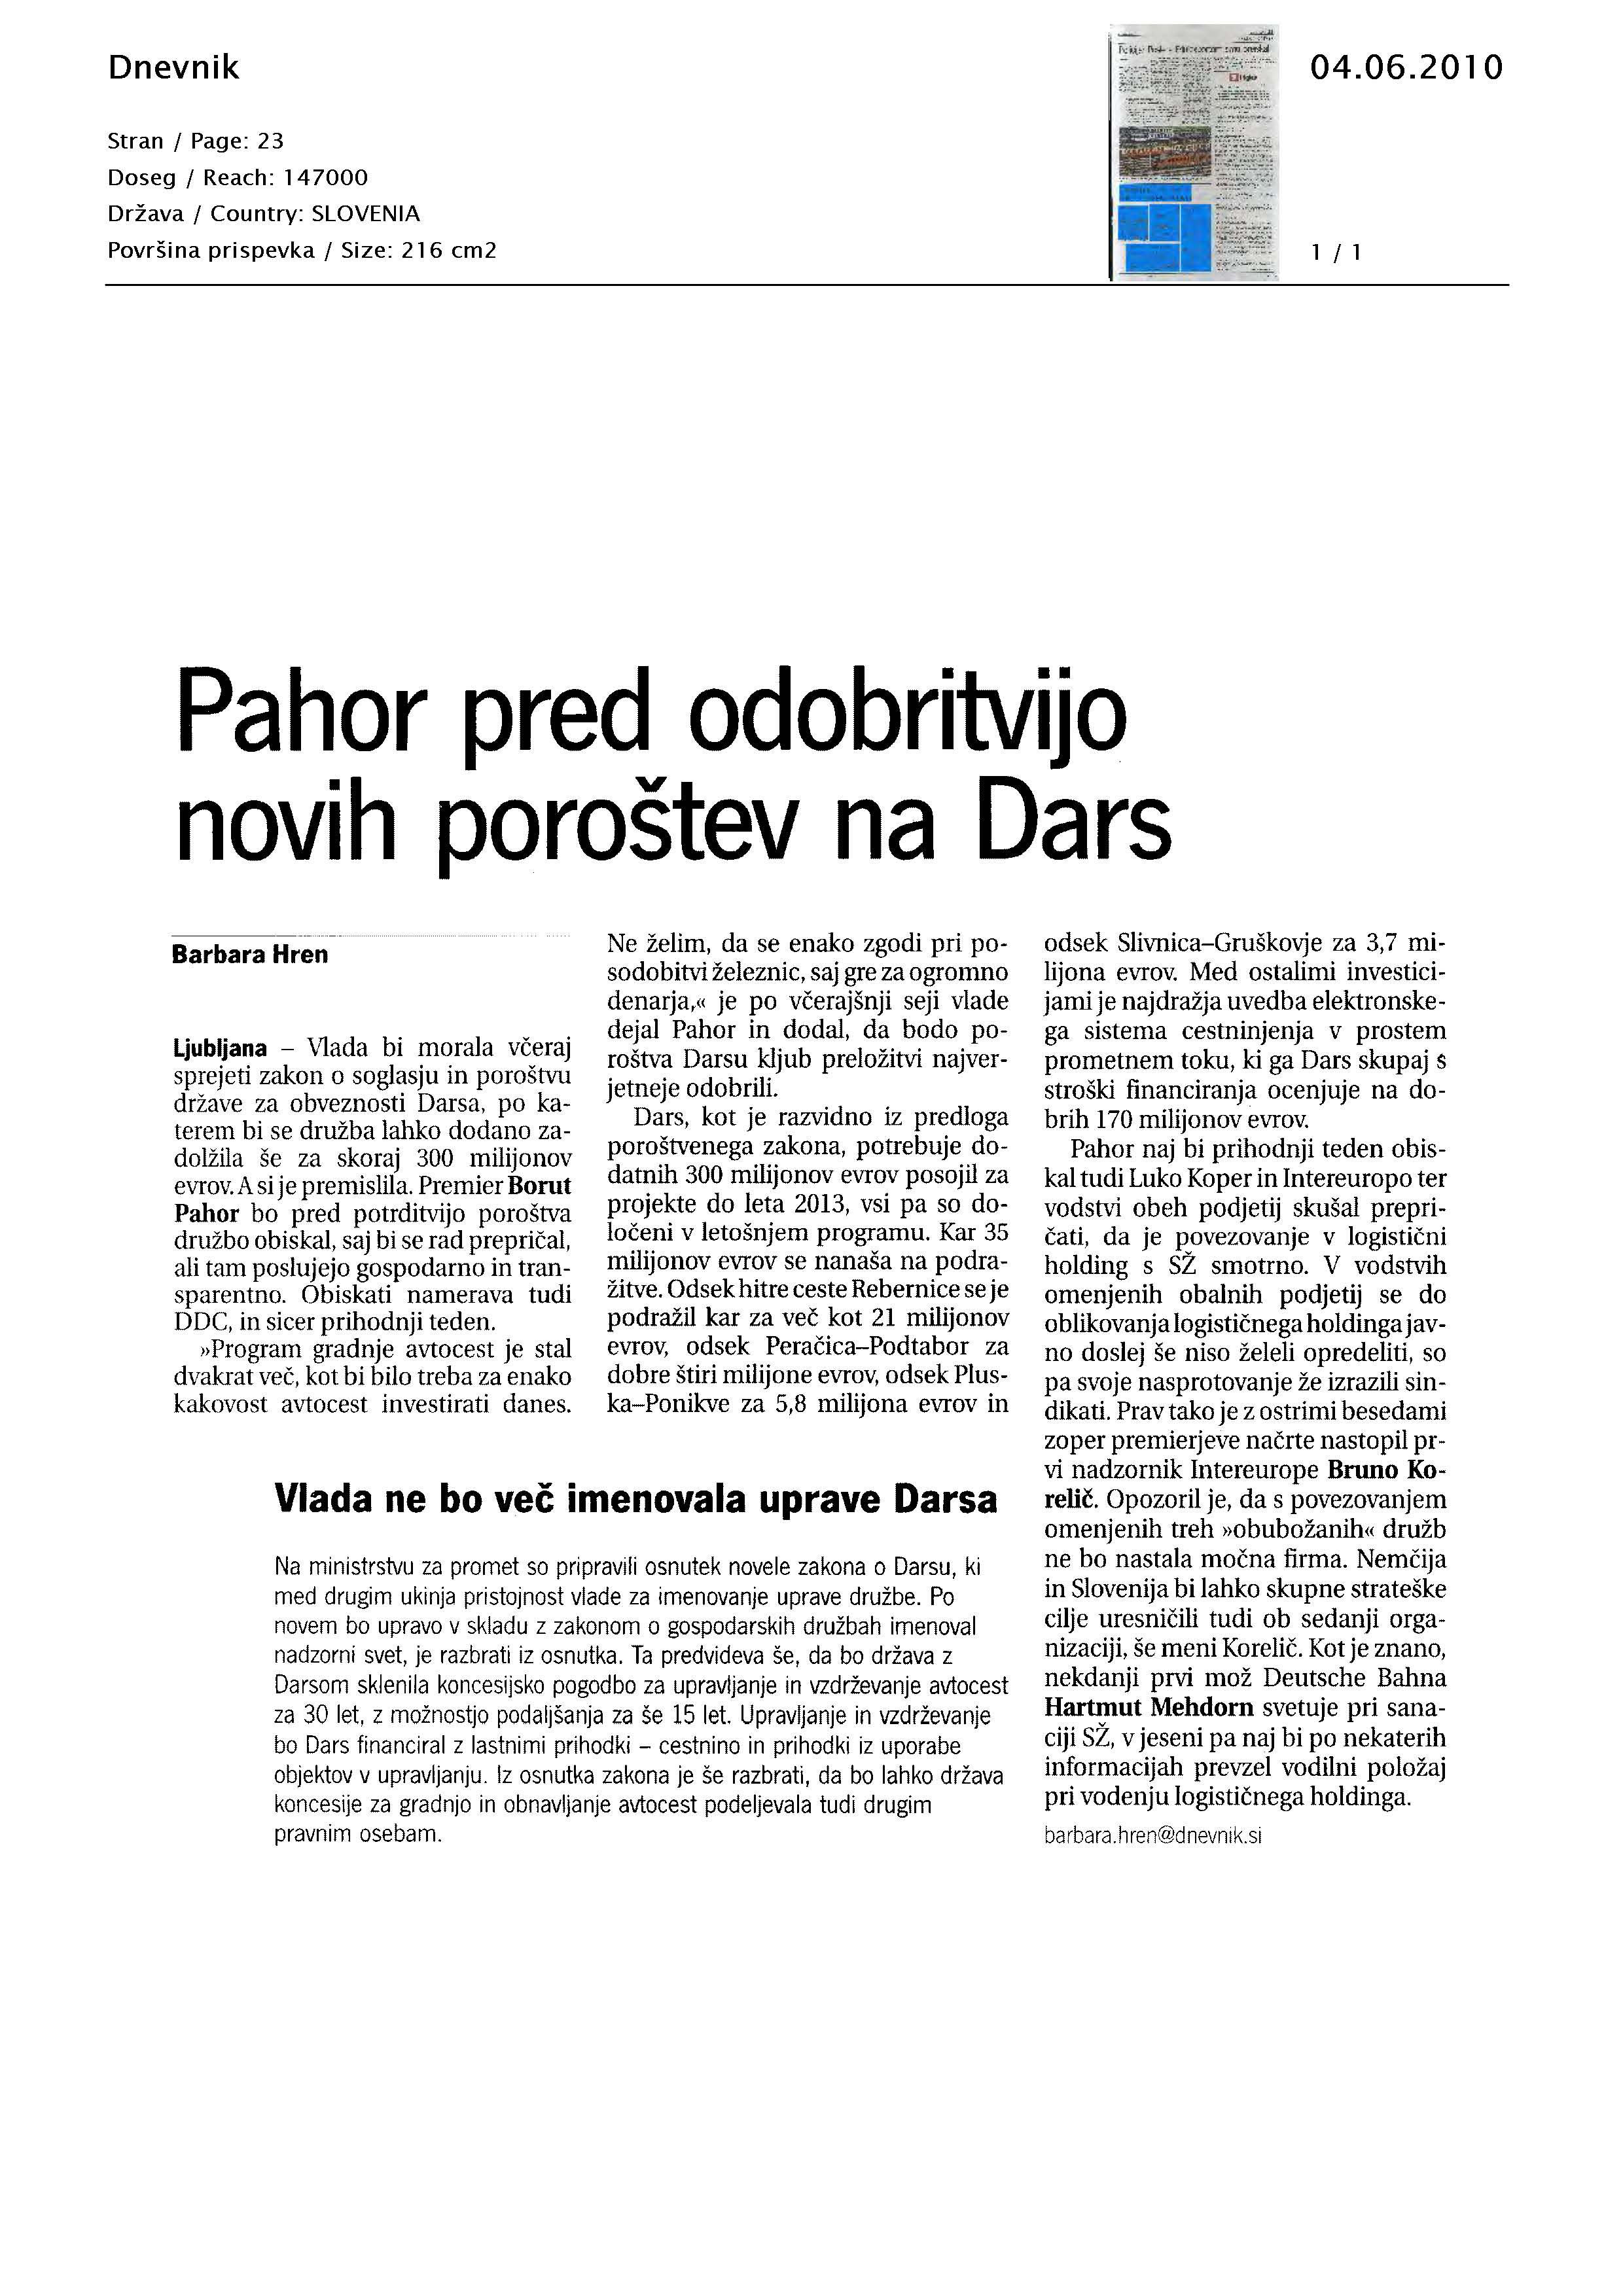 Pahor_pred_odobritvijo_novih_porotev_na_Dars